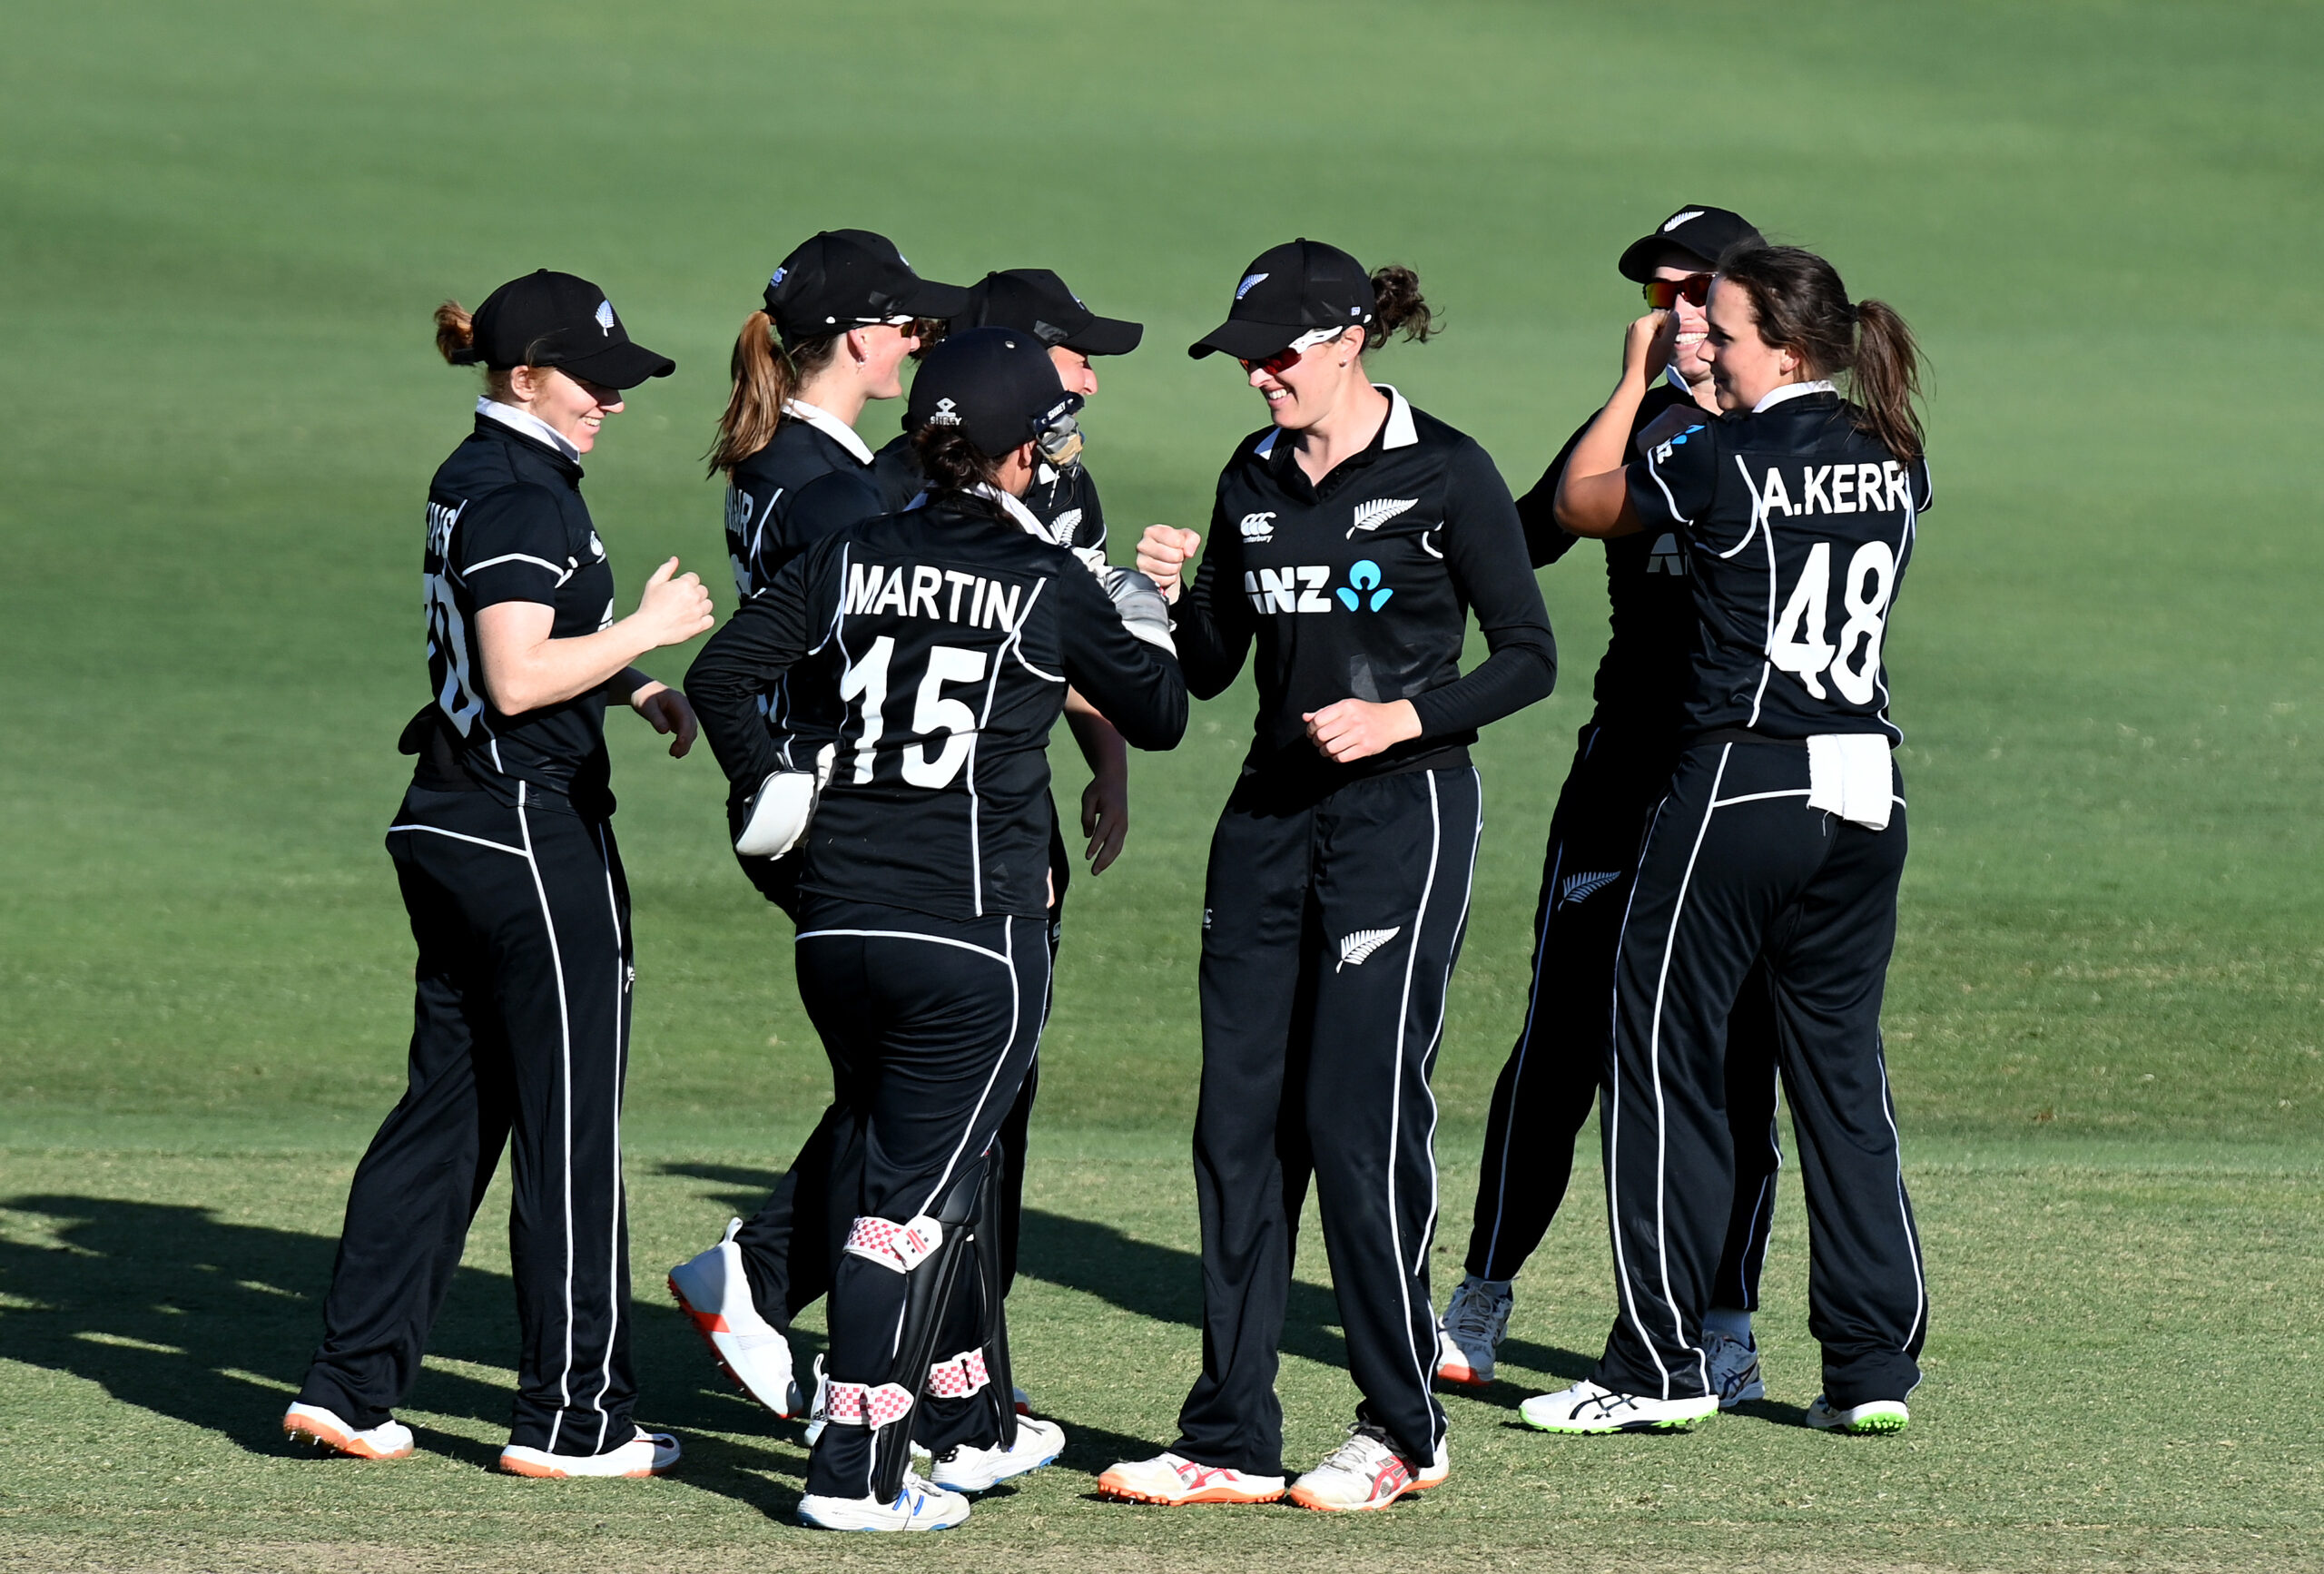 Security tightened around NZ women’s team after threat.